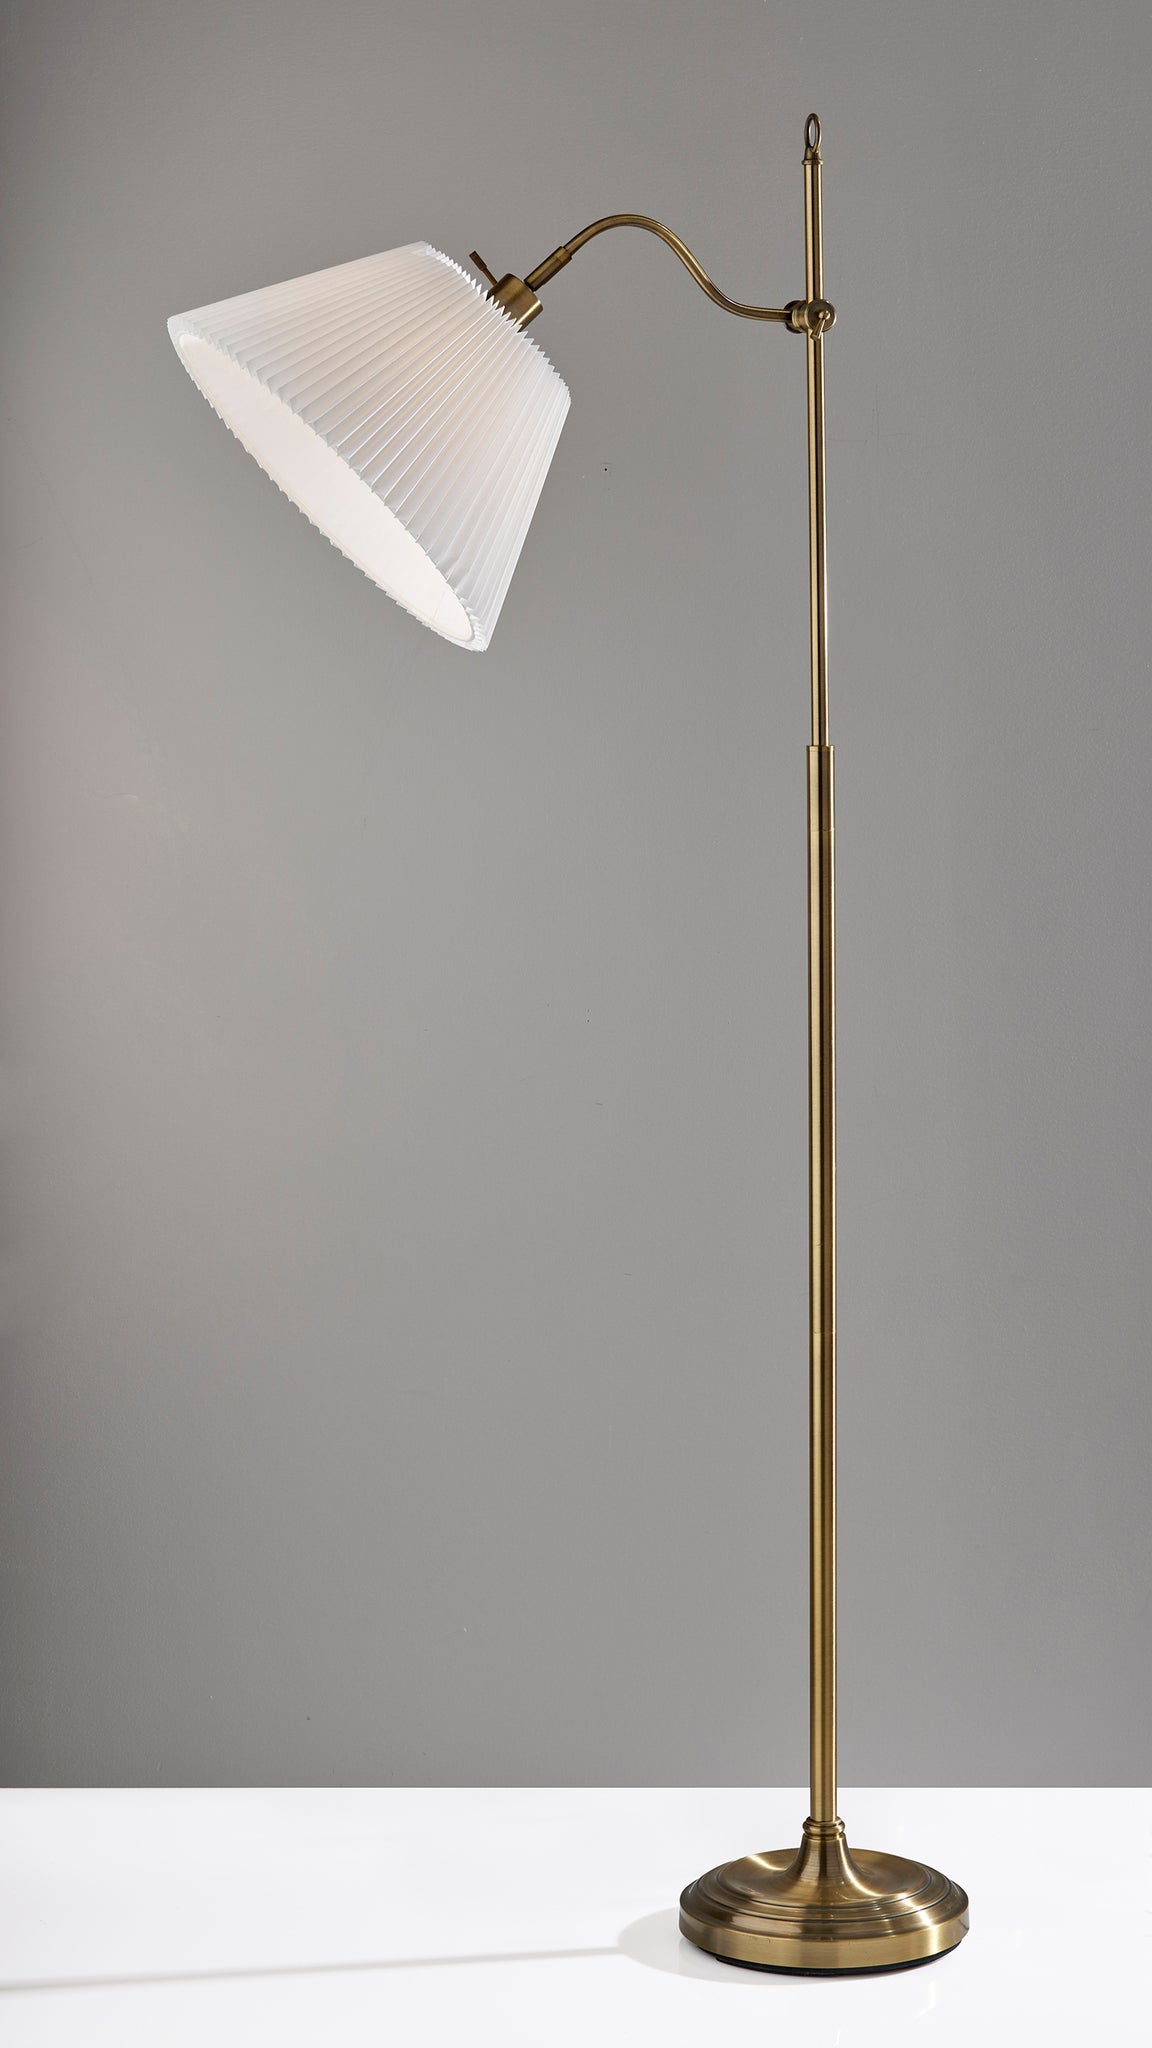 Derby Floor Lamp